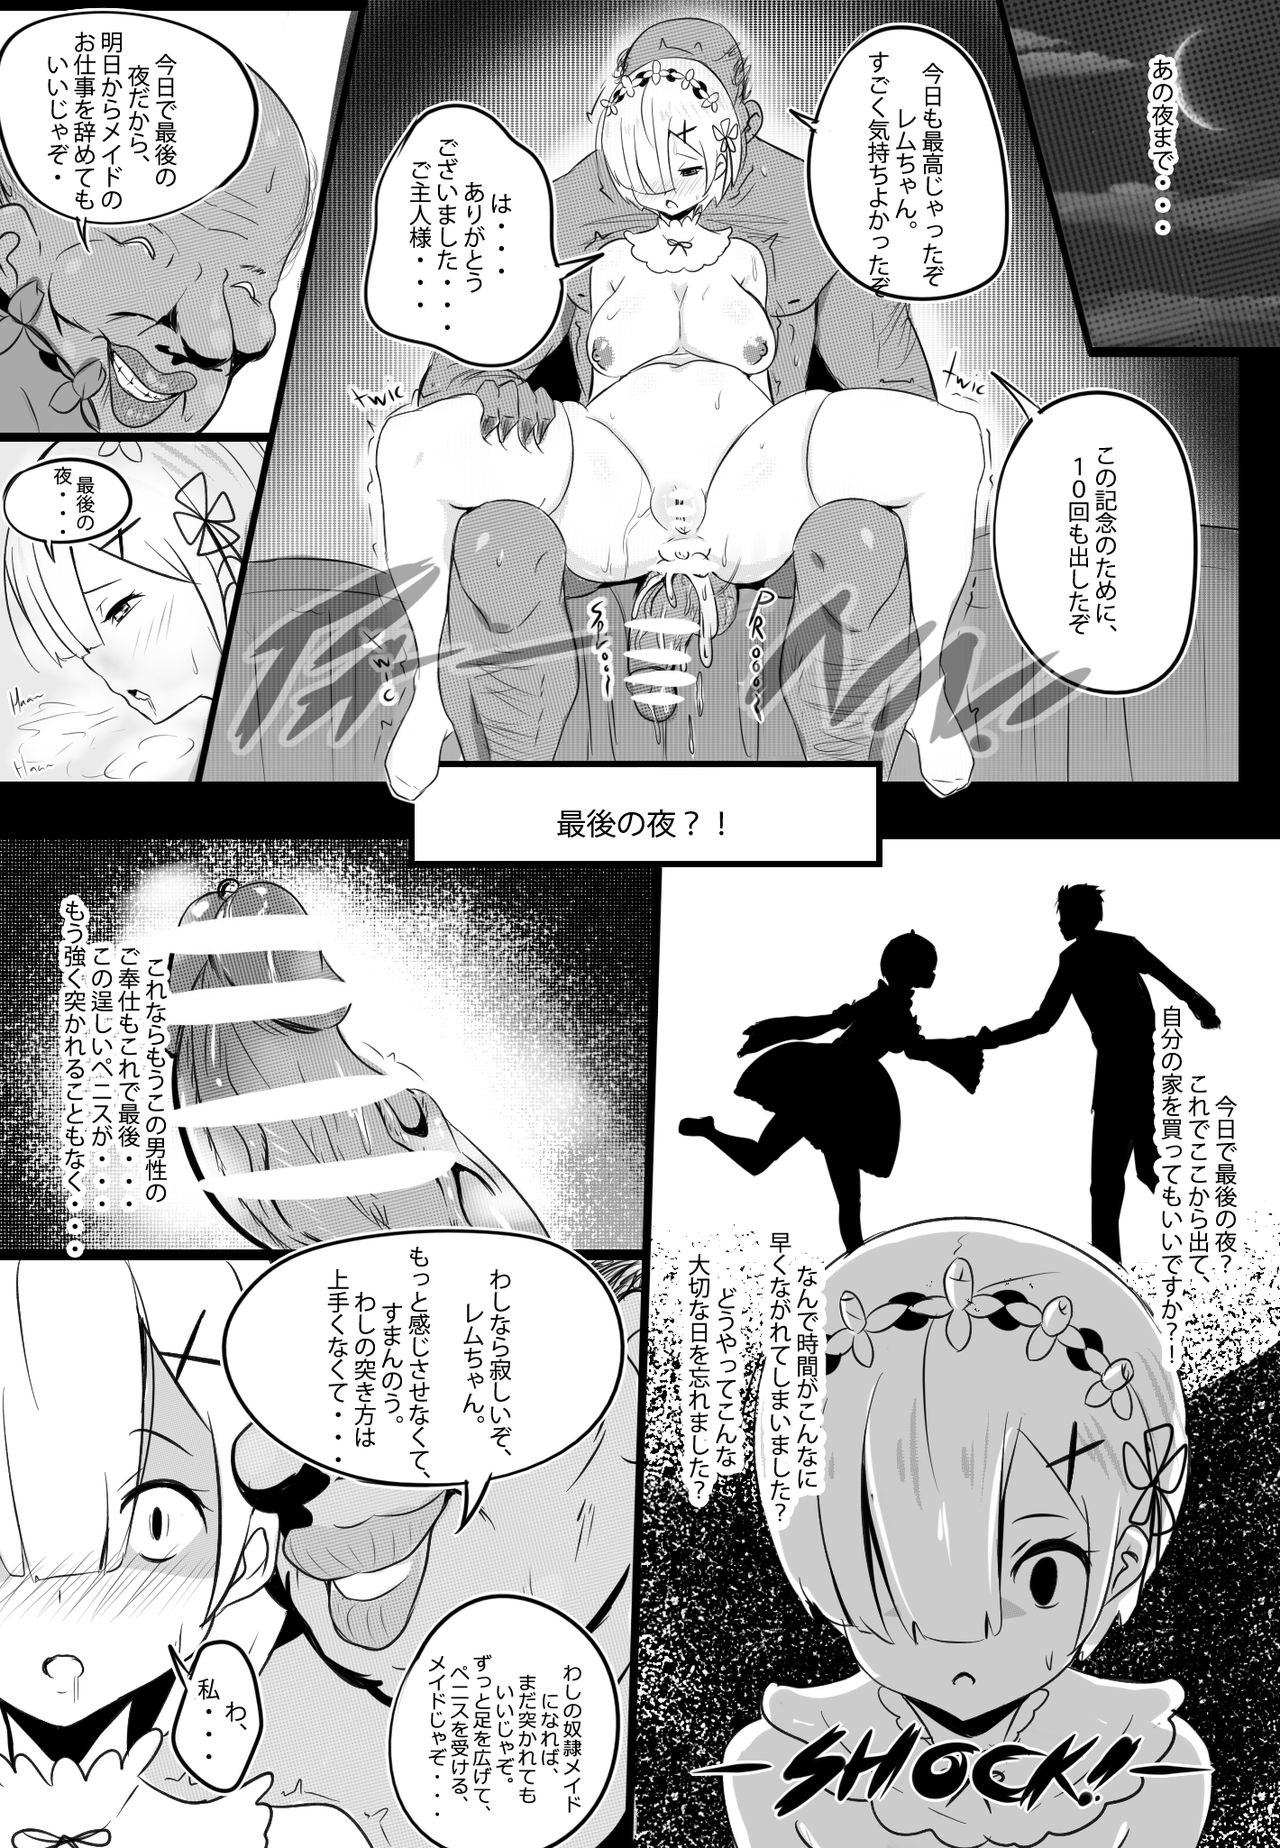 [Merkonig] B-Trayal 17 Rem (Re:Zero kara Hajimeru Isekai Seikatsu) page 10 full